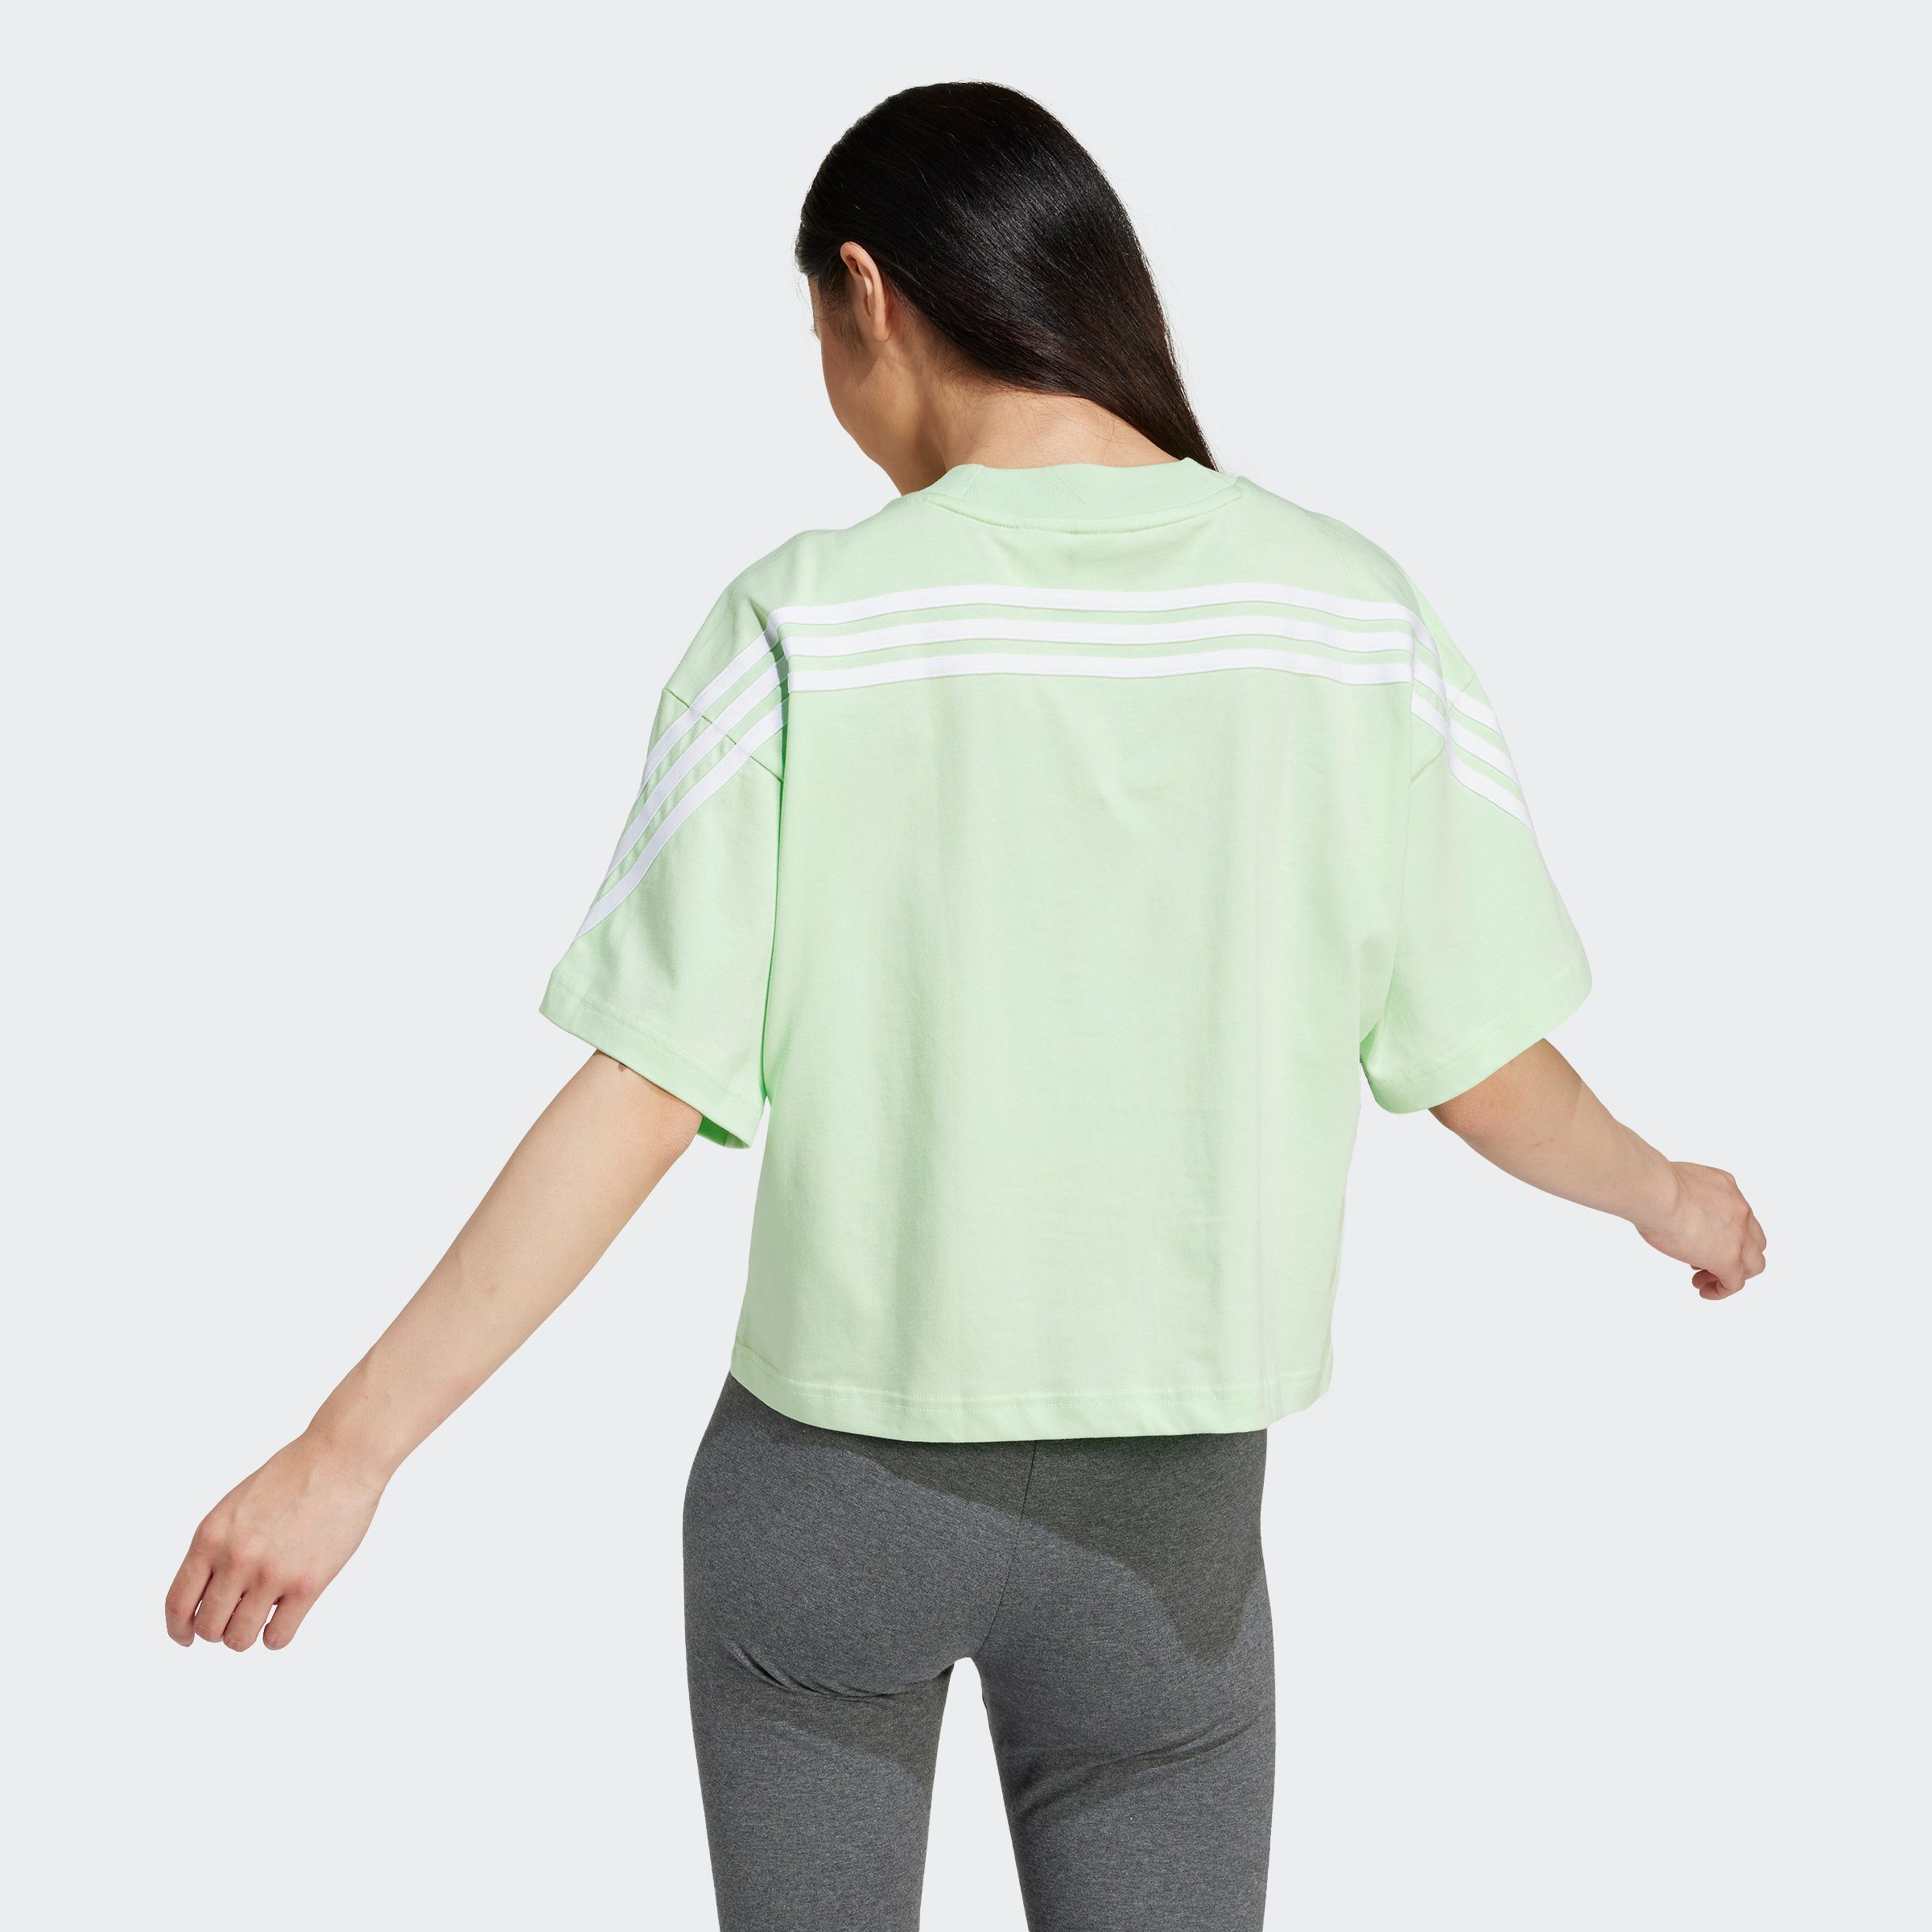 TEE Sportswear adidas 3S T-Shirt FI W SEGRSP